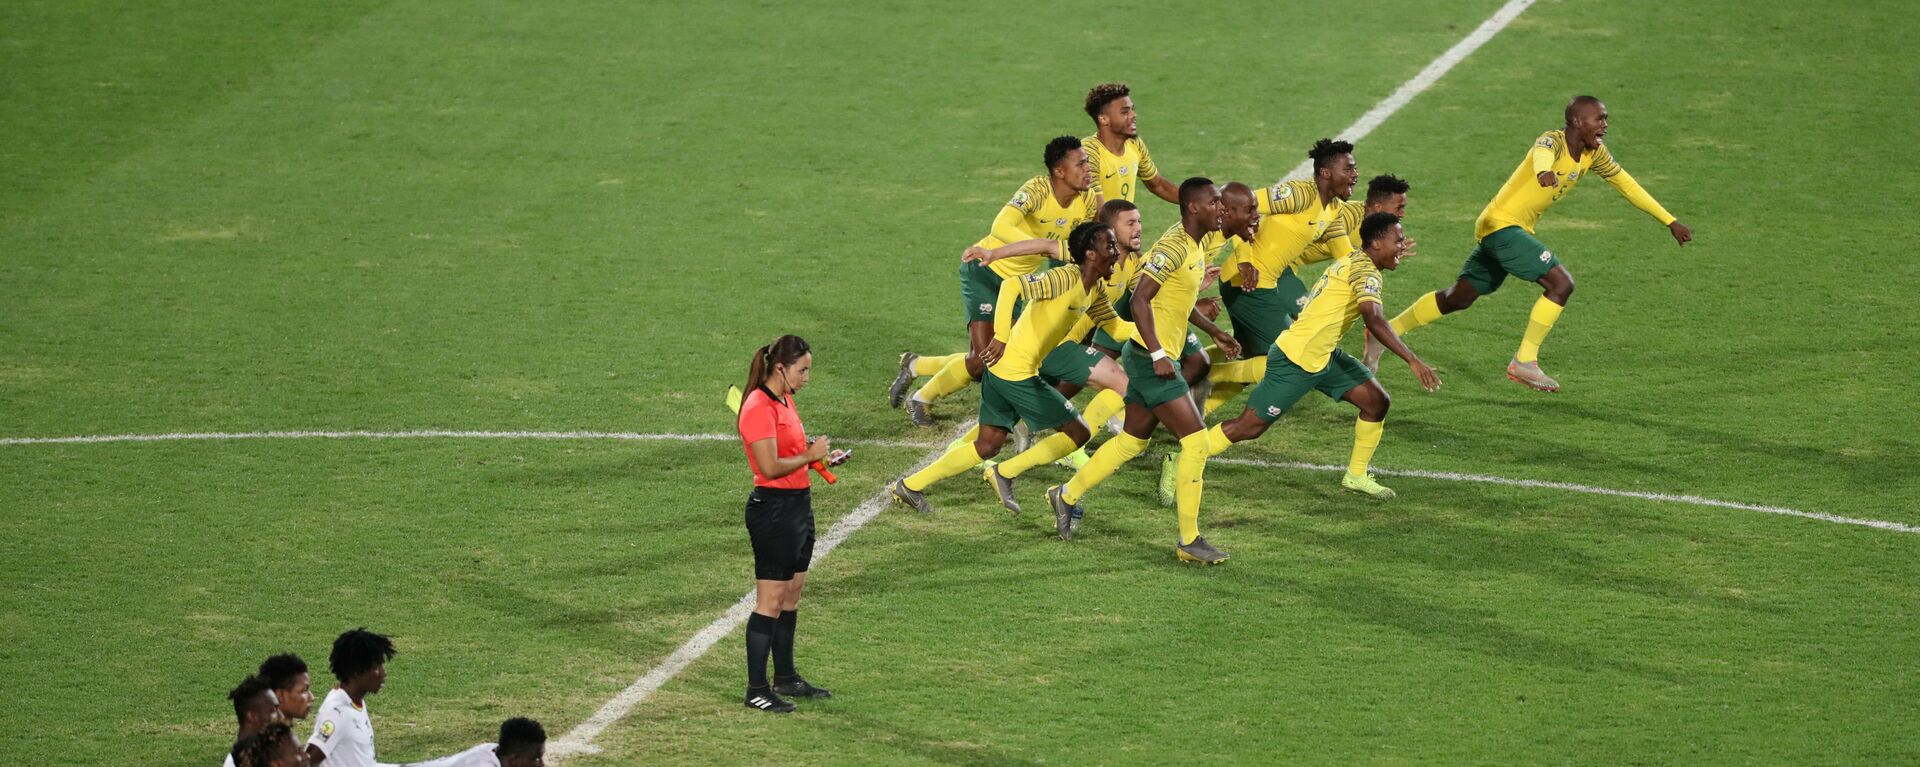 لحظة فوز منتخب جنوب أفريقيا بالمركز الثالث في بطولة كأس الأمم الأفريقية تحت 23 عاما - سبوتنيك عربي, 1920, 22.11.2019